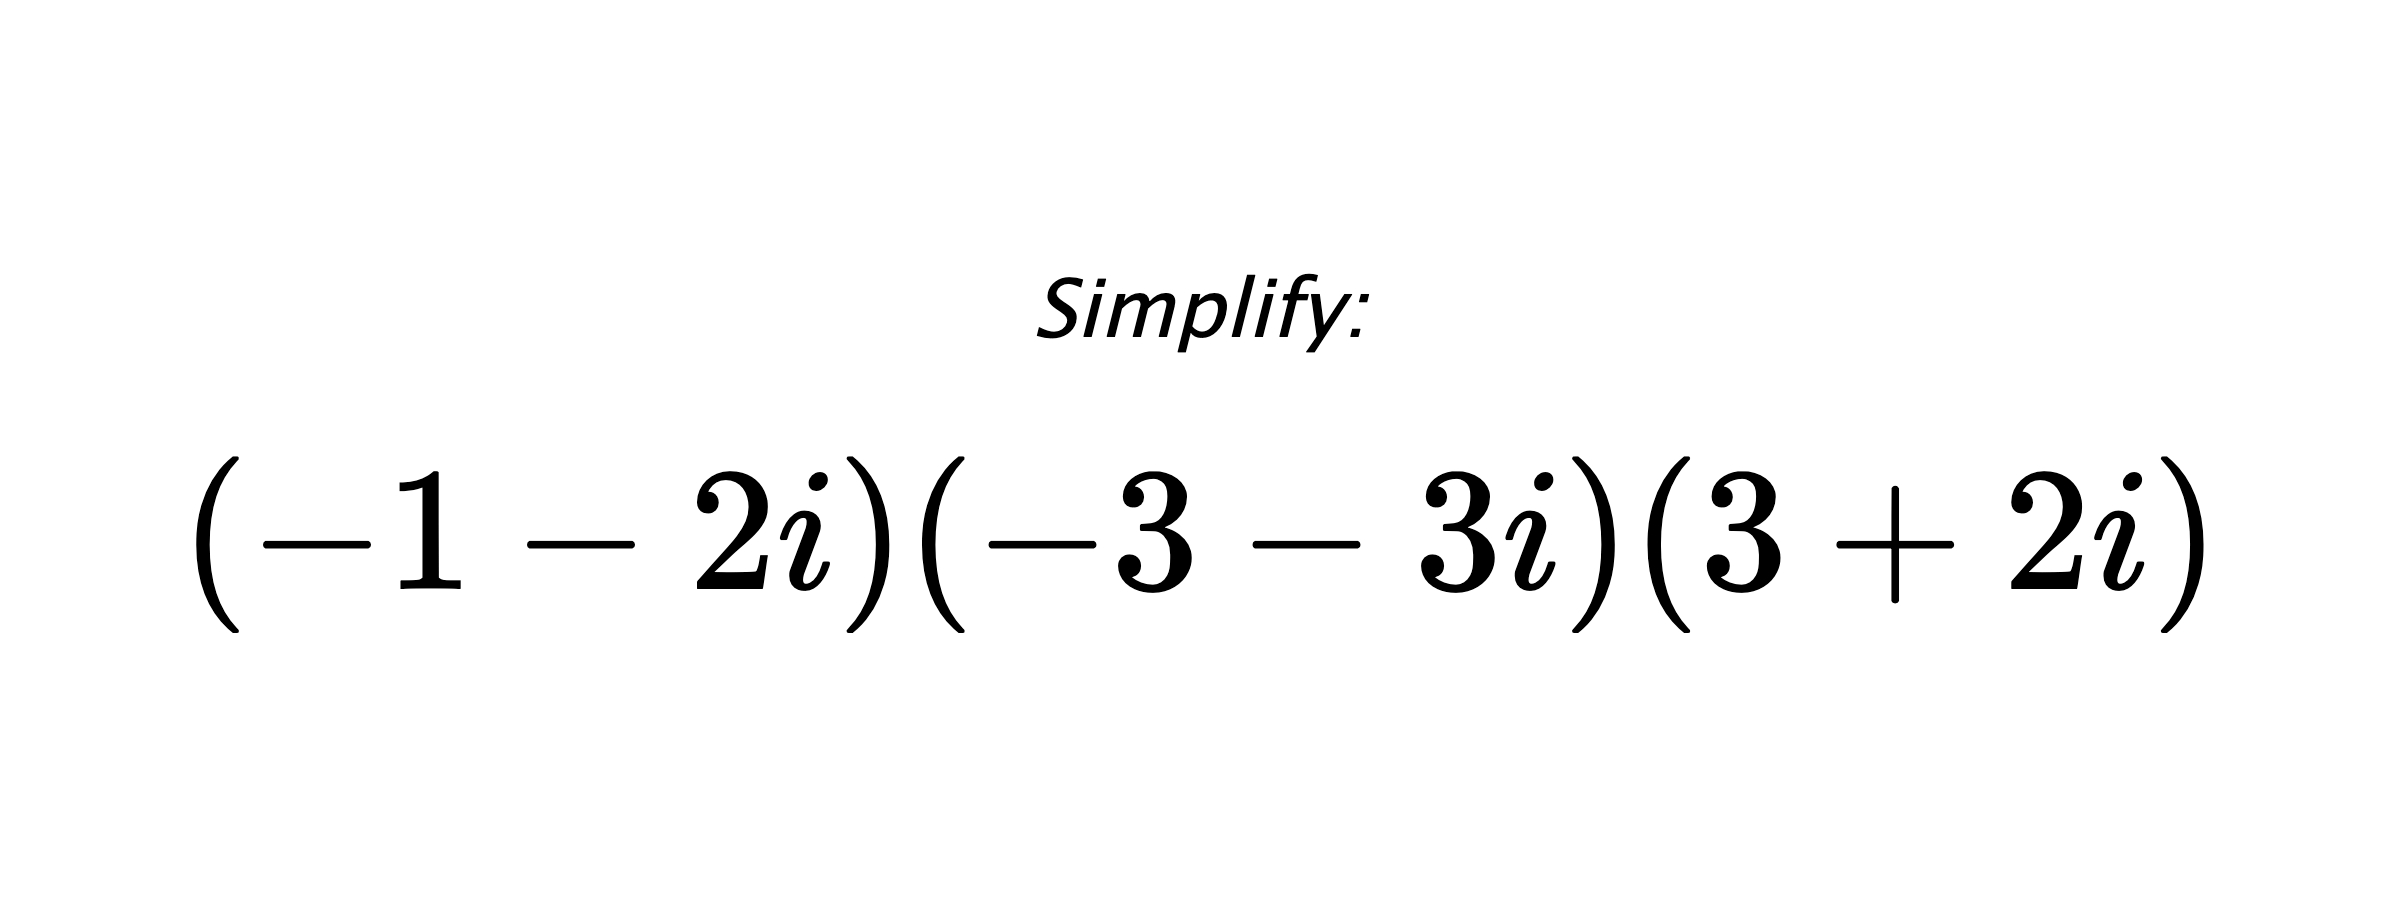 Simplify: $ (-1-2i)(-3-3i)(3+2i) $